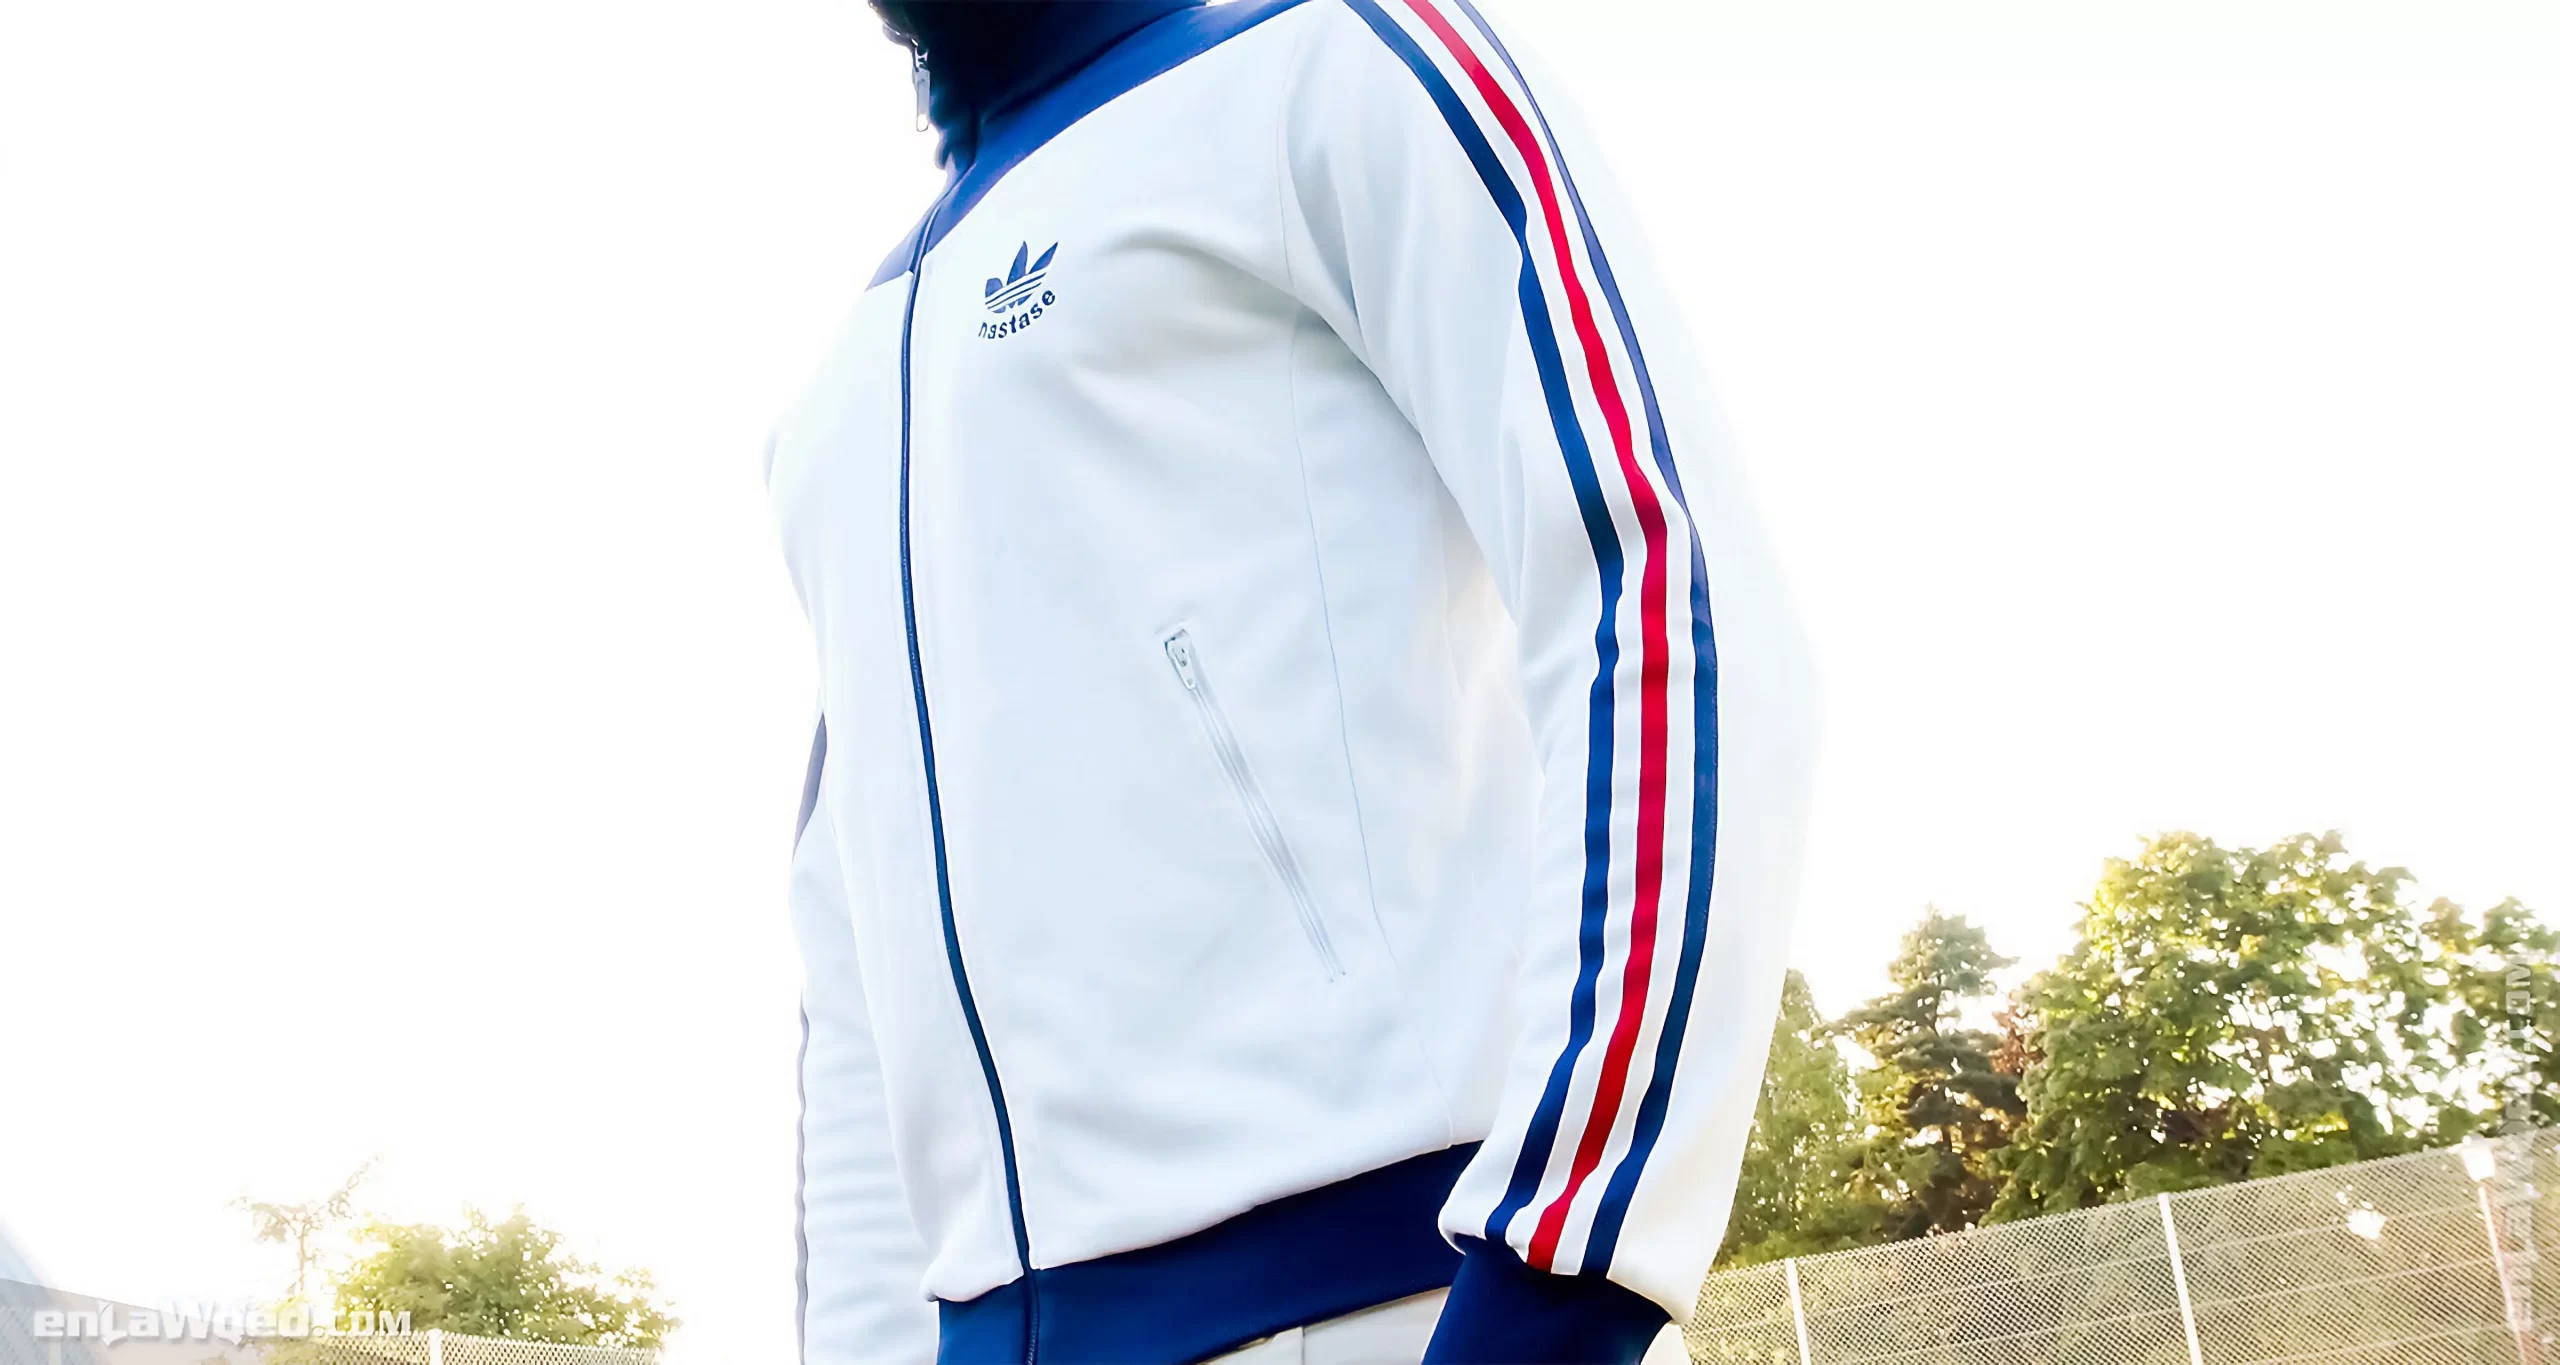 Men’s 2005 Ilie Nastase Track Top by Adidas Originals: Treasure (EnLawded.com file #lmchk89916ip2y121652kg9st)